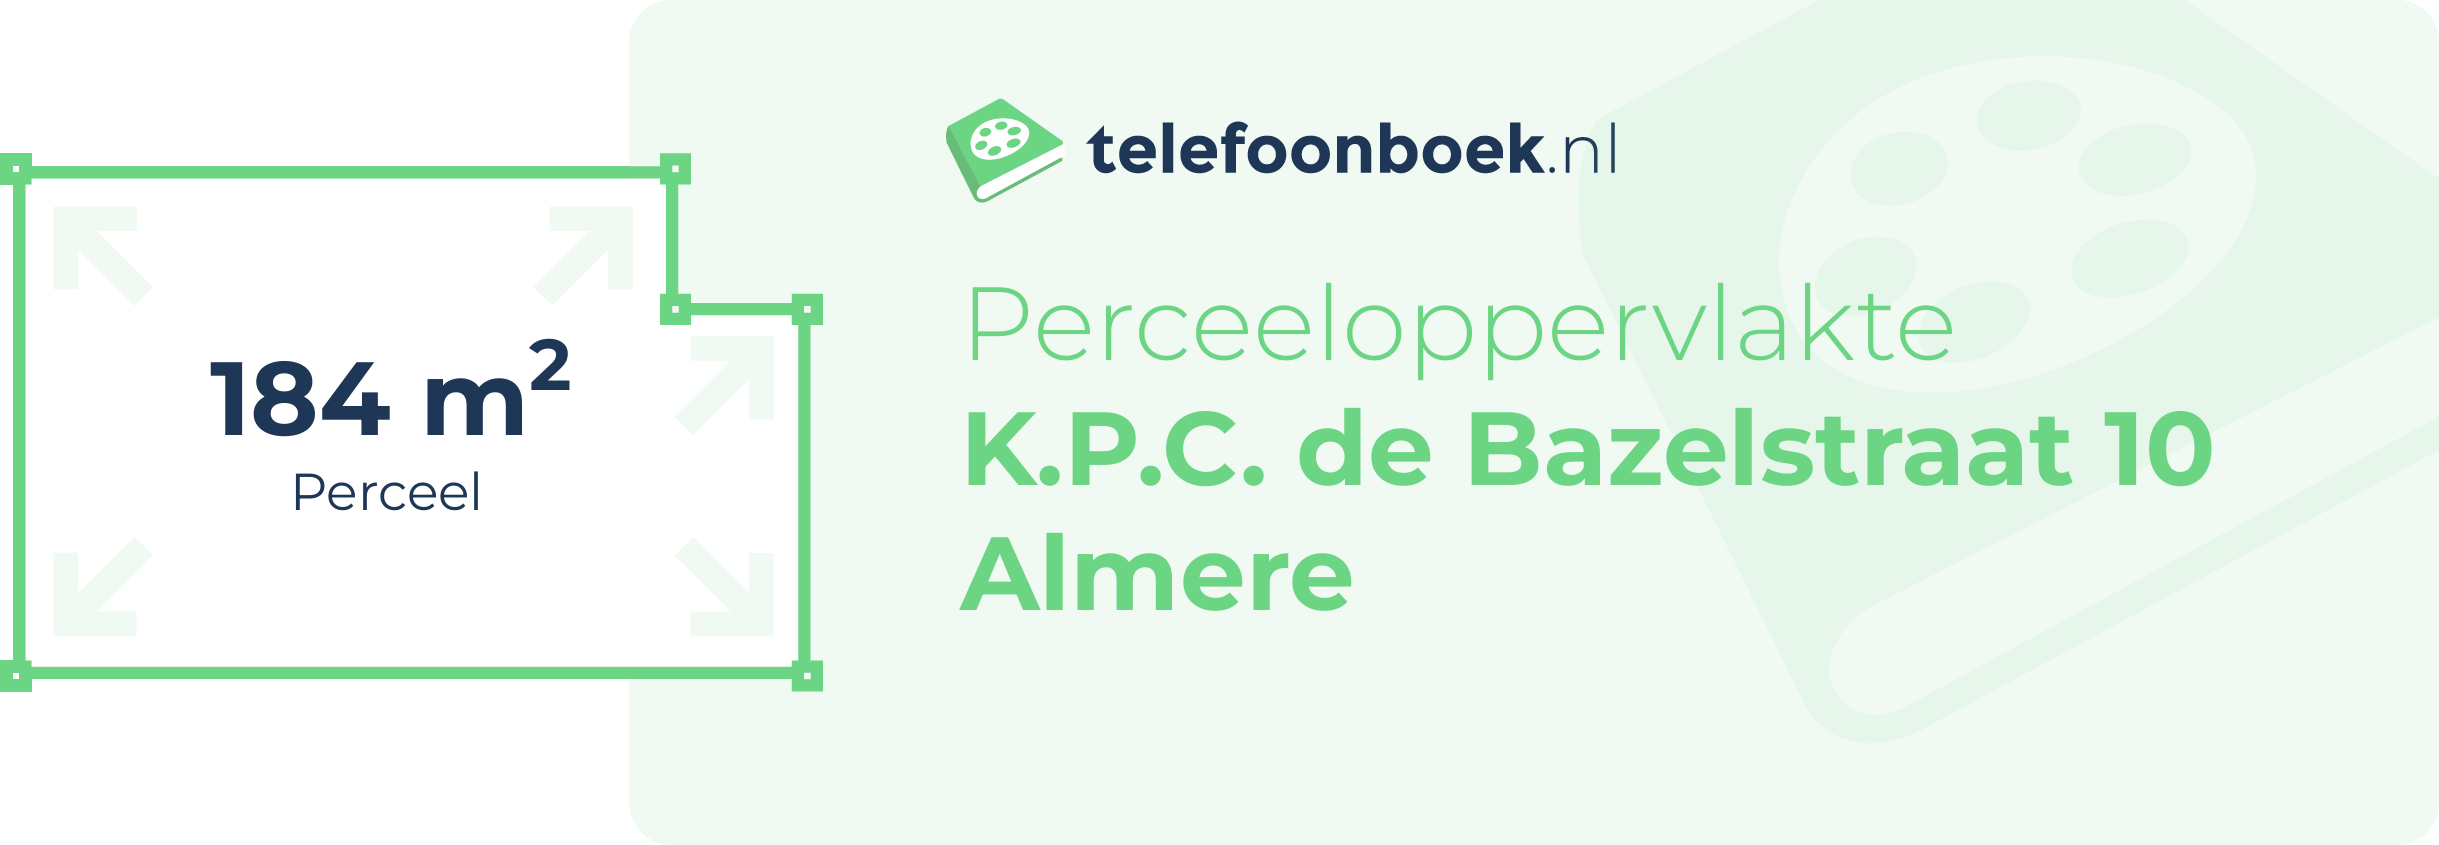 Perceeloppervlakte K.P.C. De Bazelstraat 10 Almere